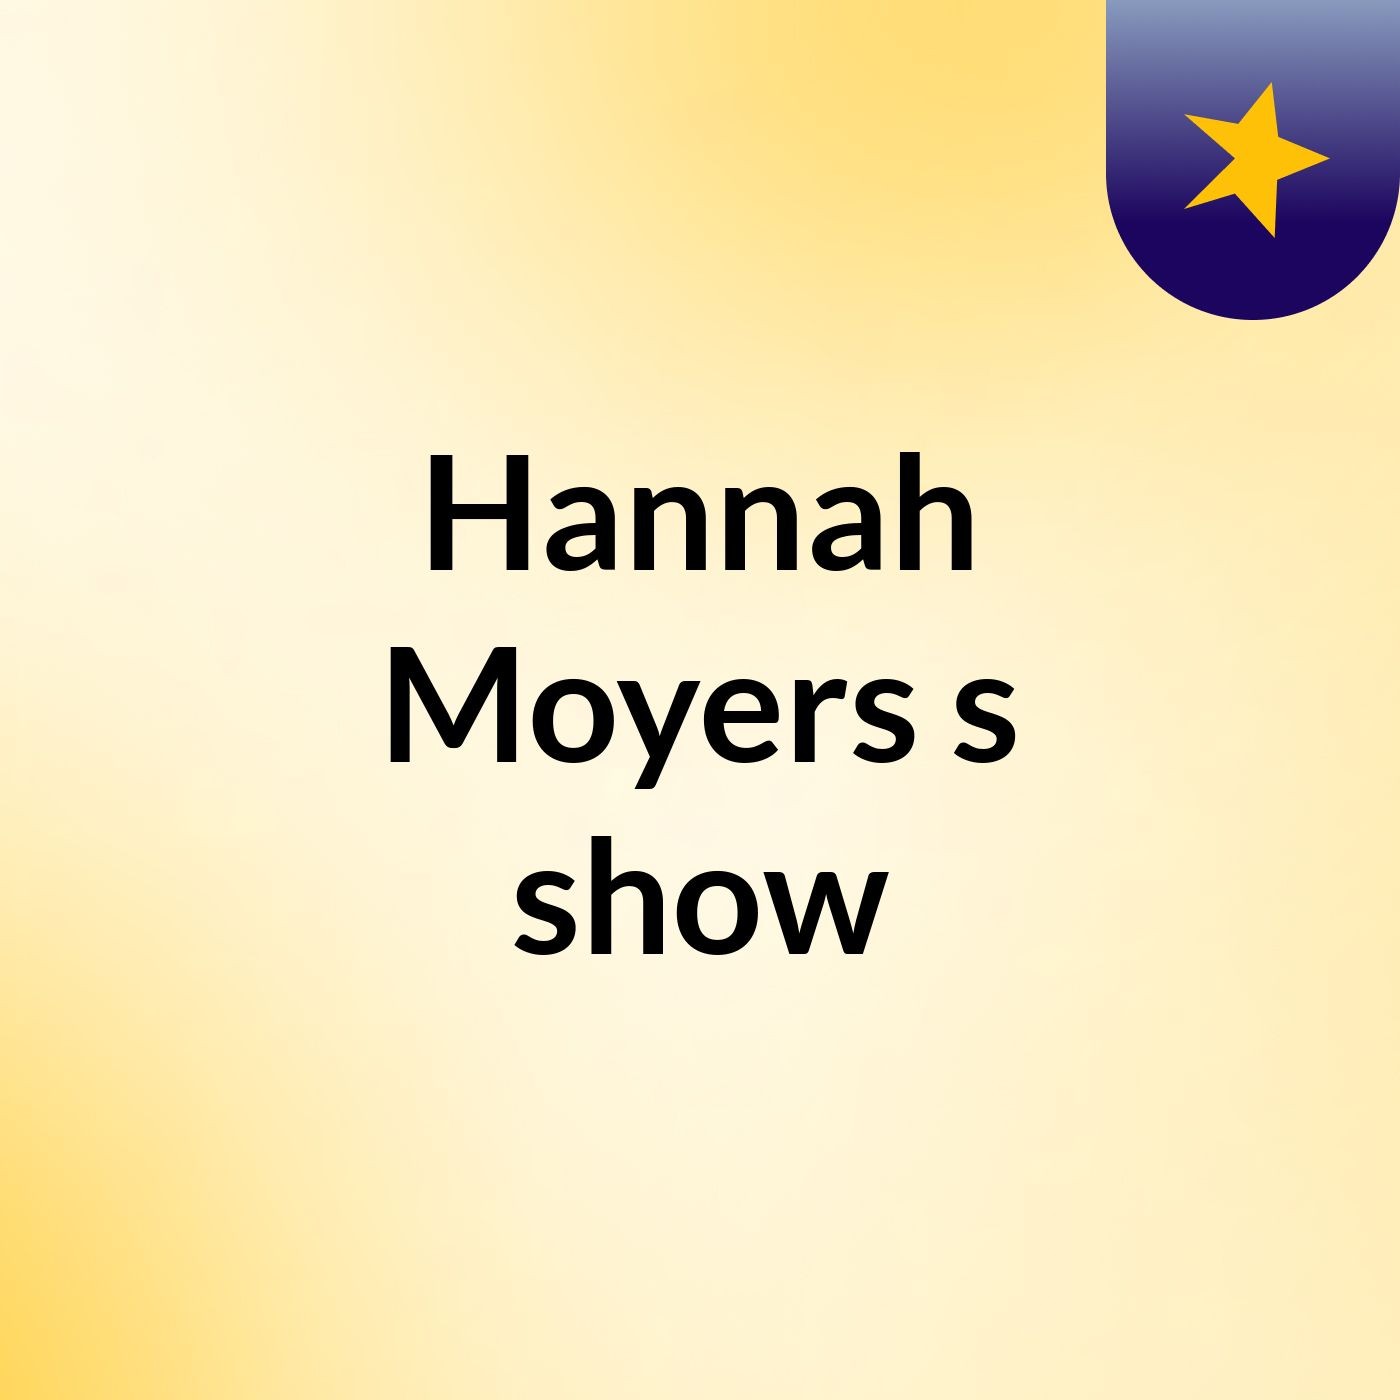 Hannah Moyers's show